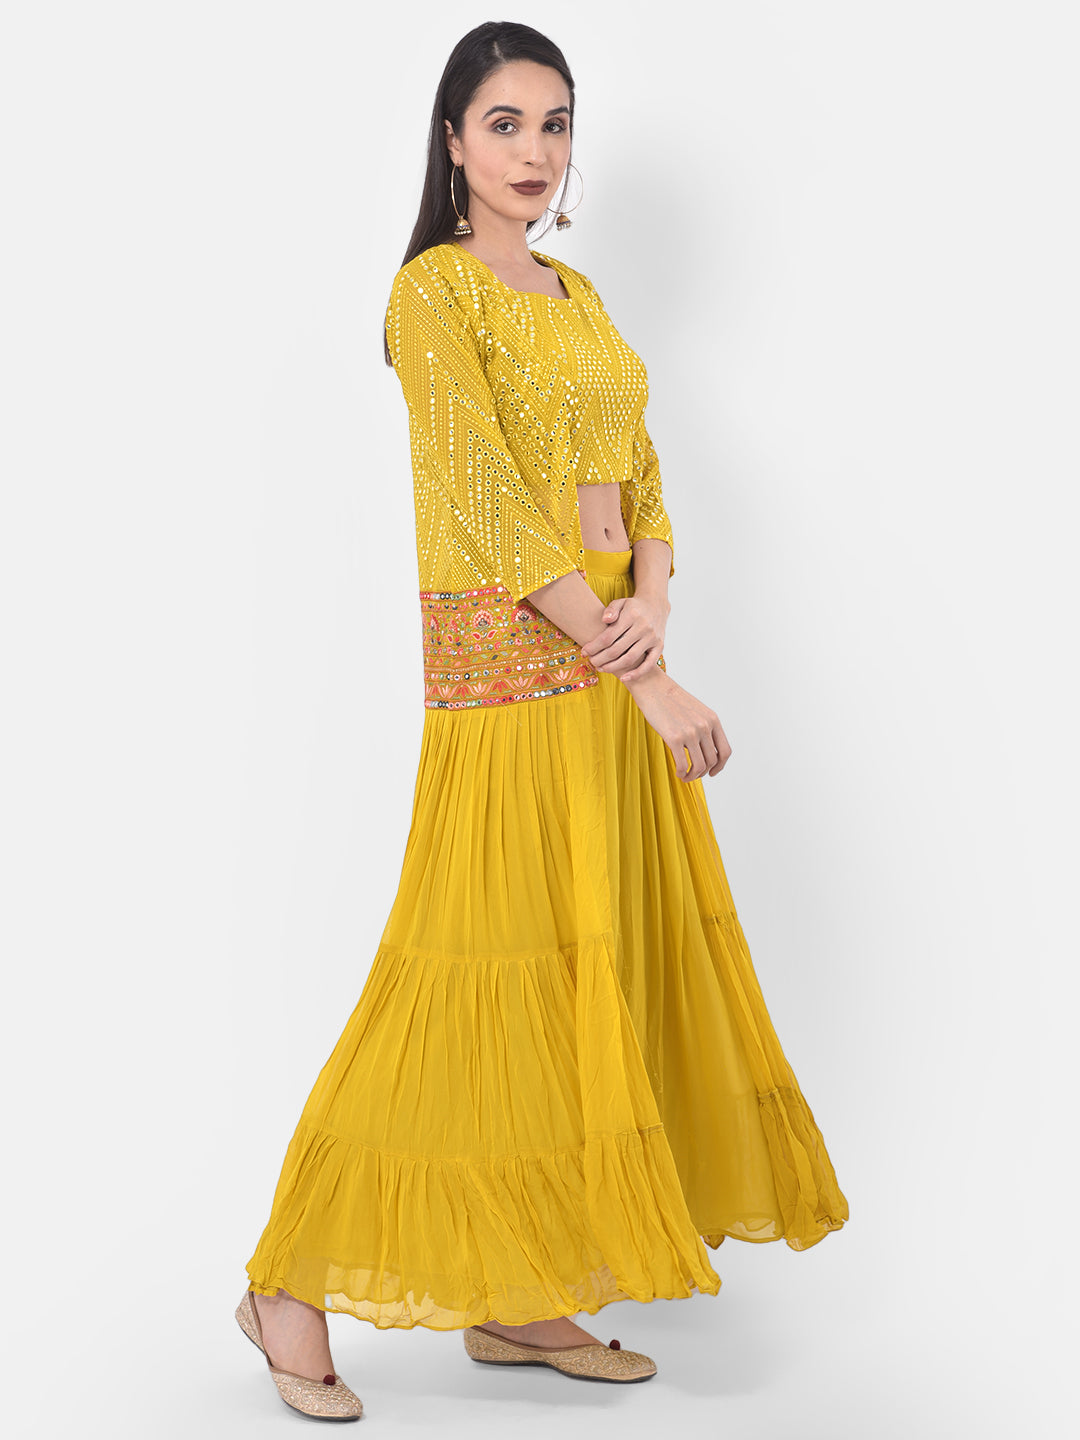 Neeru's Yellow Embellished Top & Skirt Set With Shrug